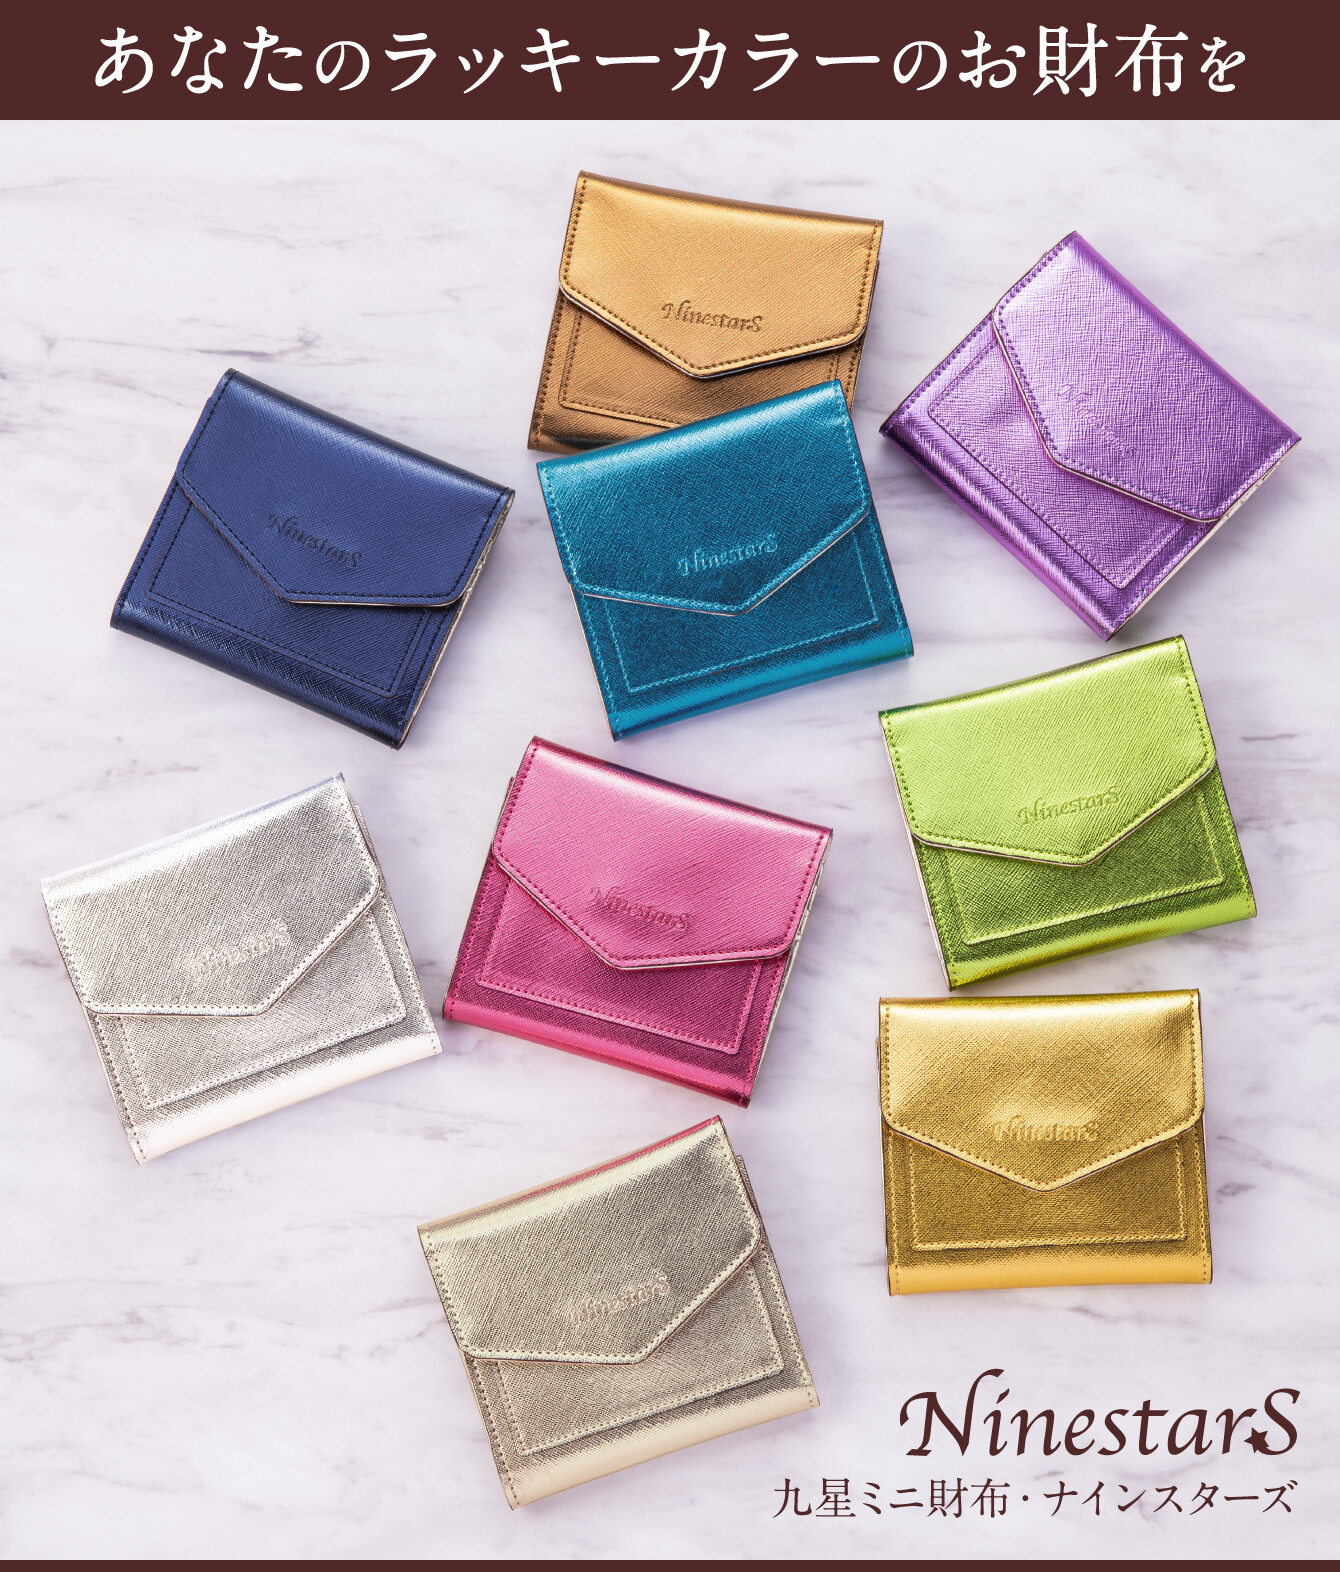 あなたのラッキーカラーのお財布を『九星ミニ財布・ナインスターズ』